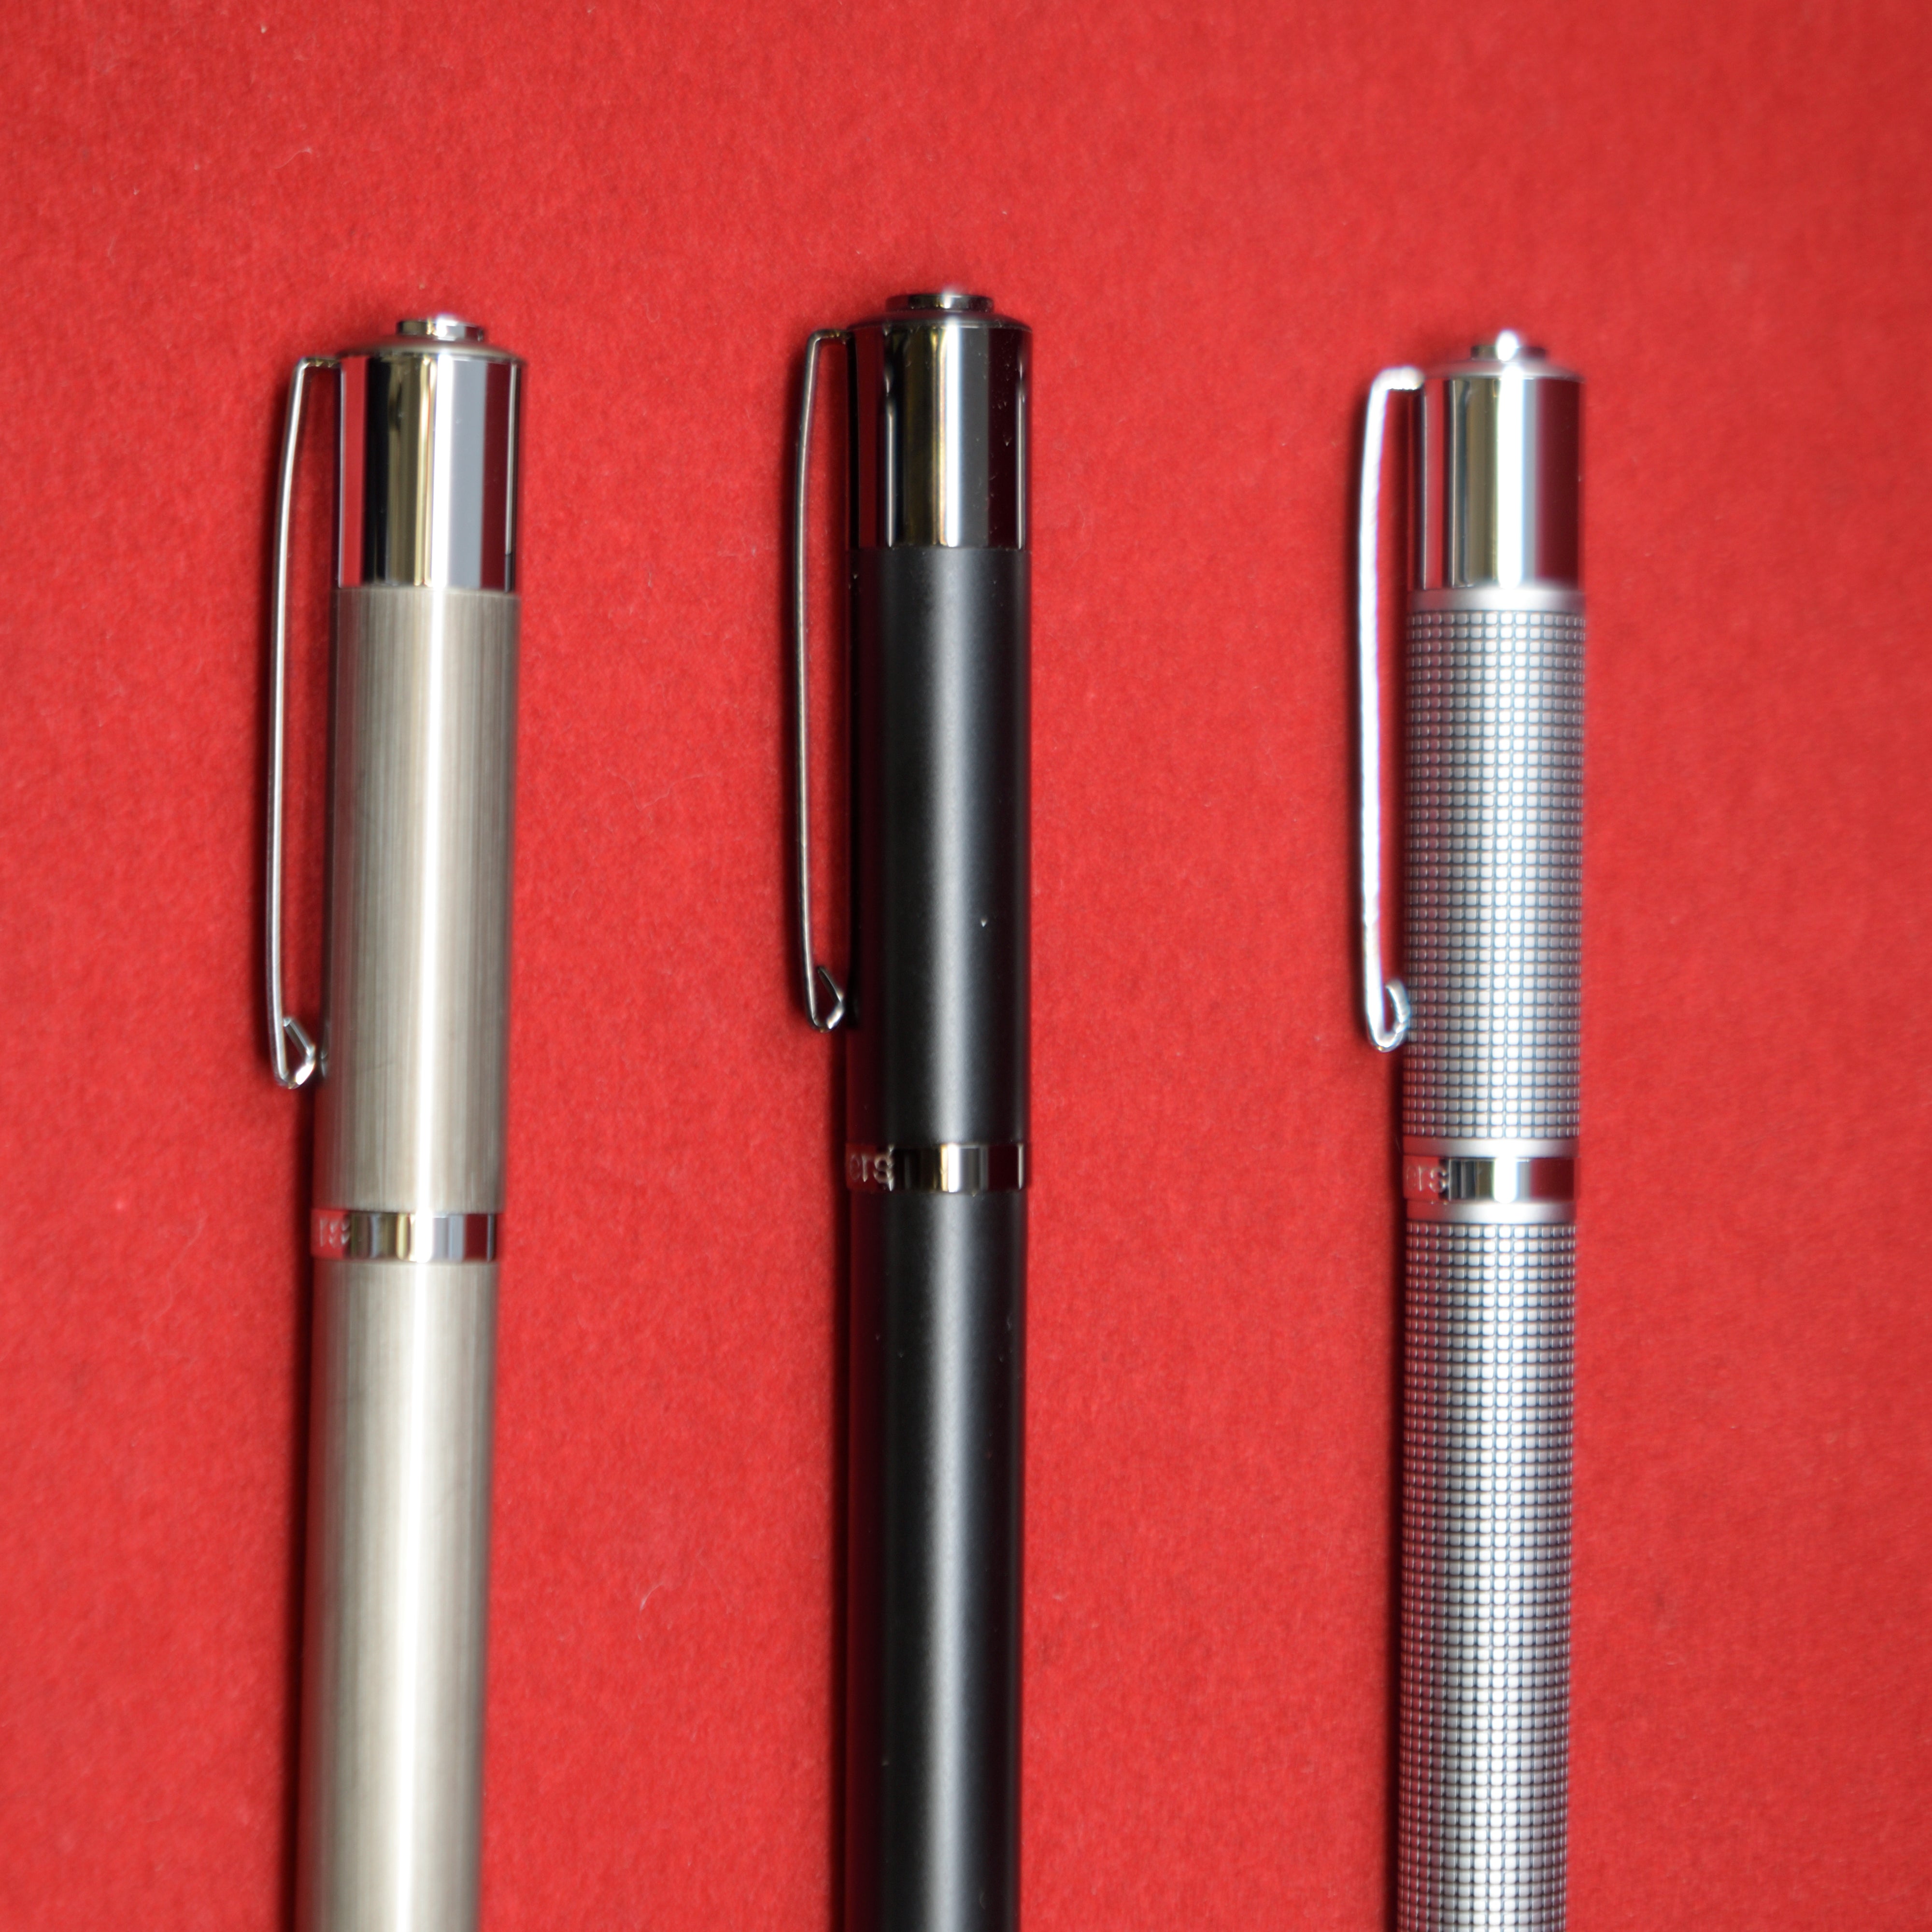 Yookers Metis Fiber Pen - Black Grid-Pen Boutique Ltd